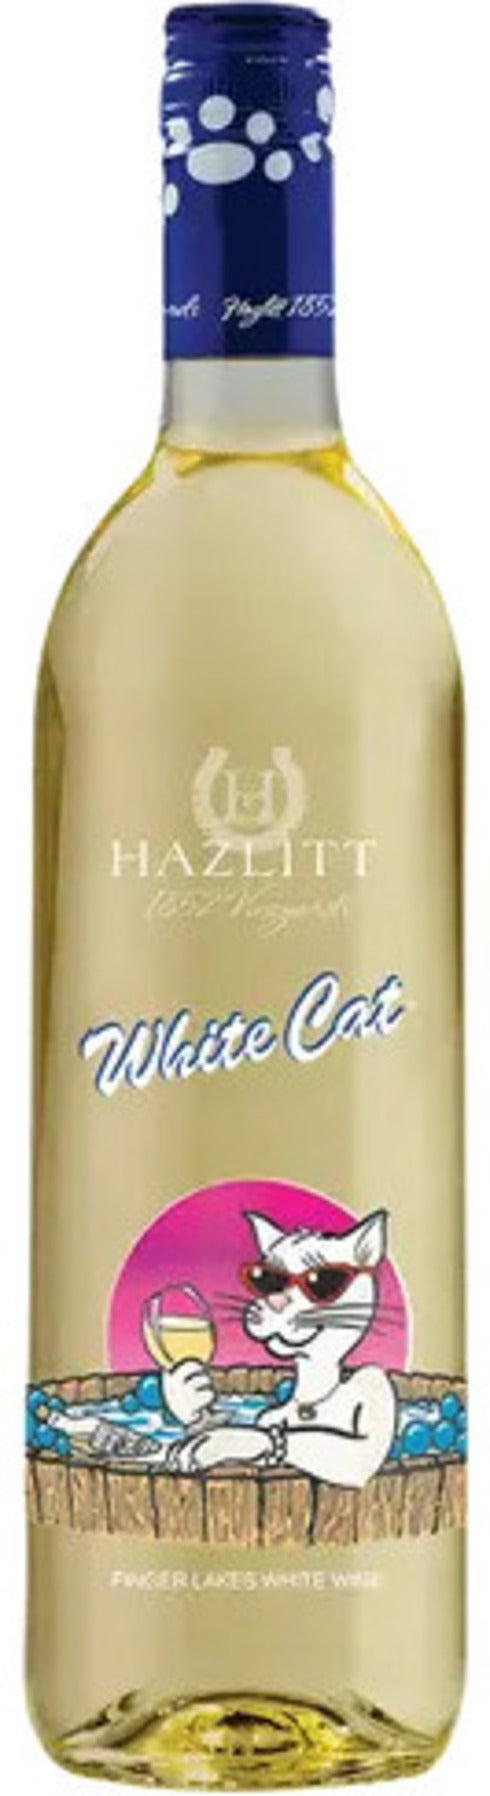 HAZLITT WHITE CAT